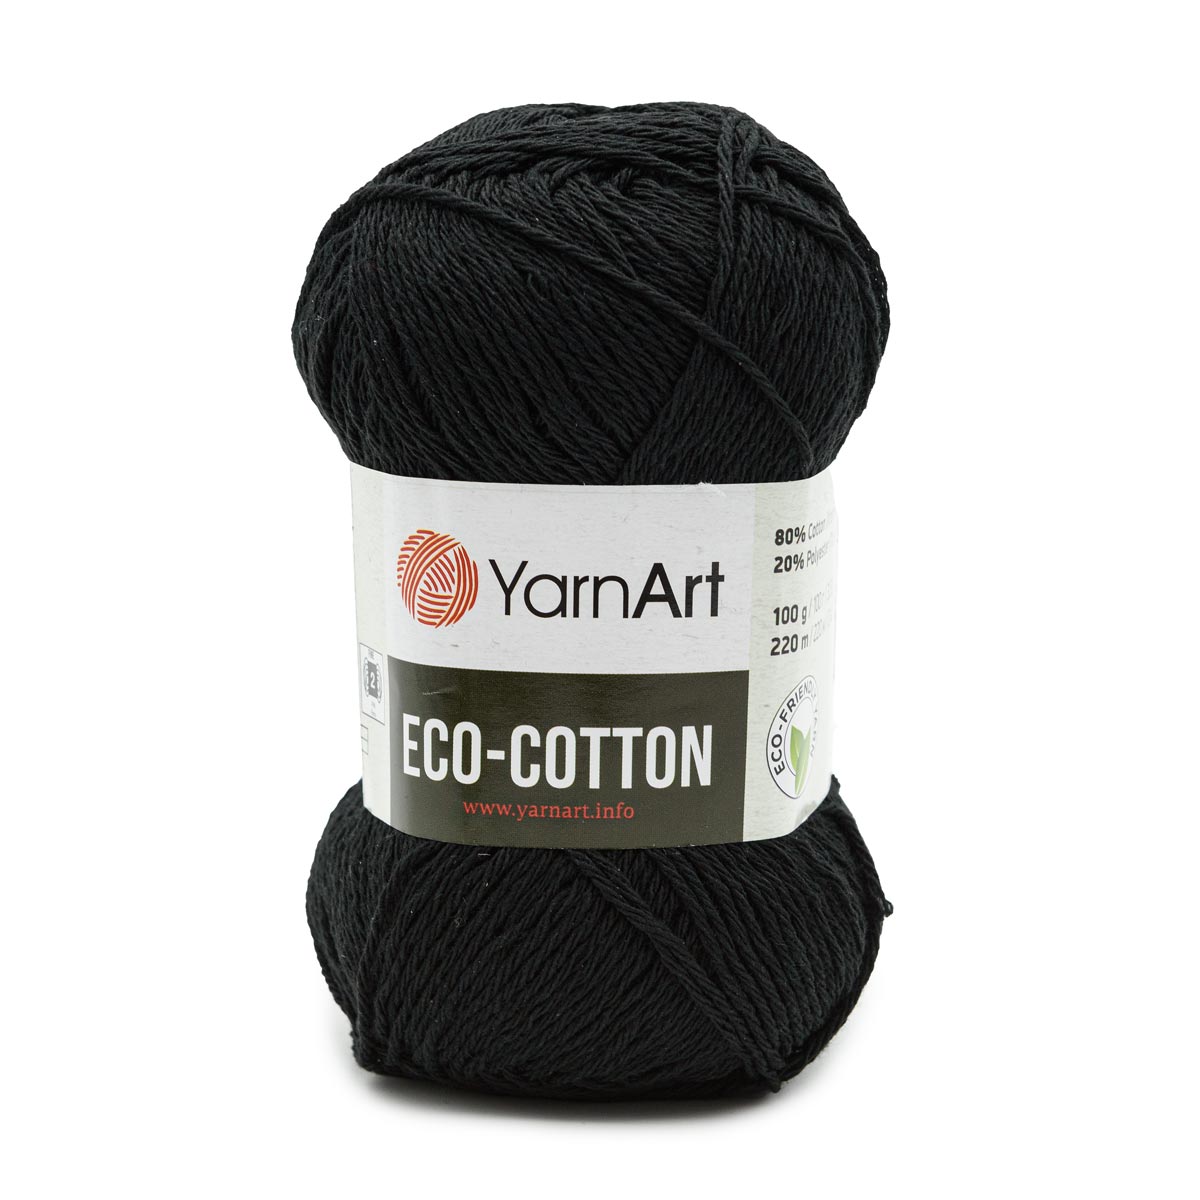 Пряжа YarnArt Eco Cotton комфортная для летних вещей 100 г 220 м 761 черный 5 мотков - фото 6